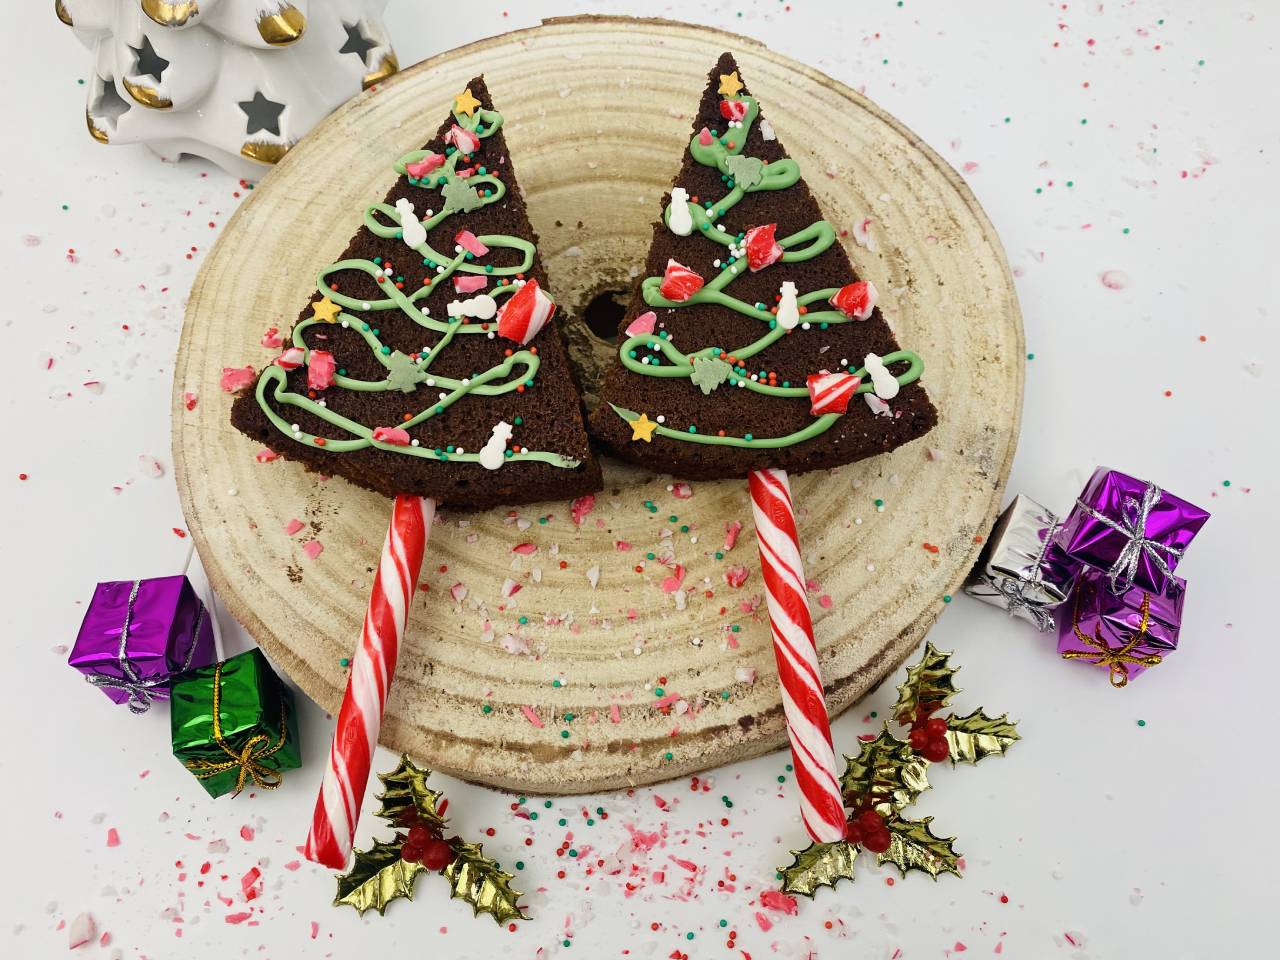 Sapins de Noël sur mousses au chocolat - Recette par kilometre-0